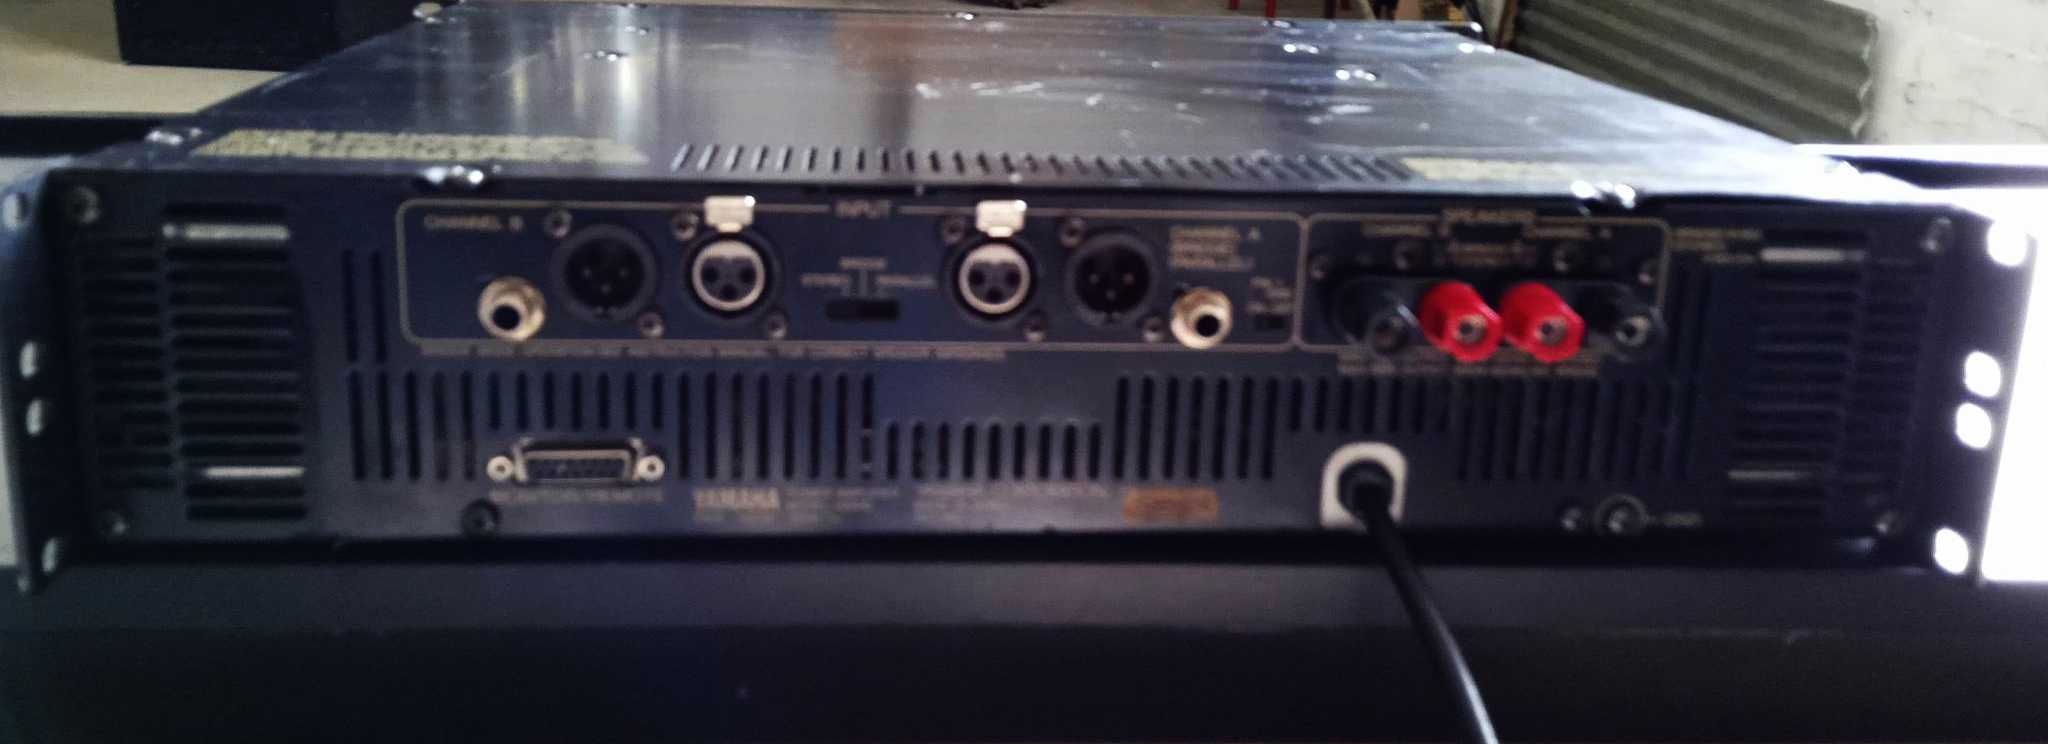 Amplificador de potência 900W Yamaha H3000